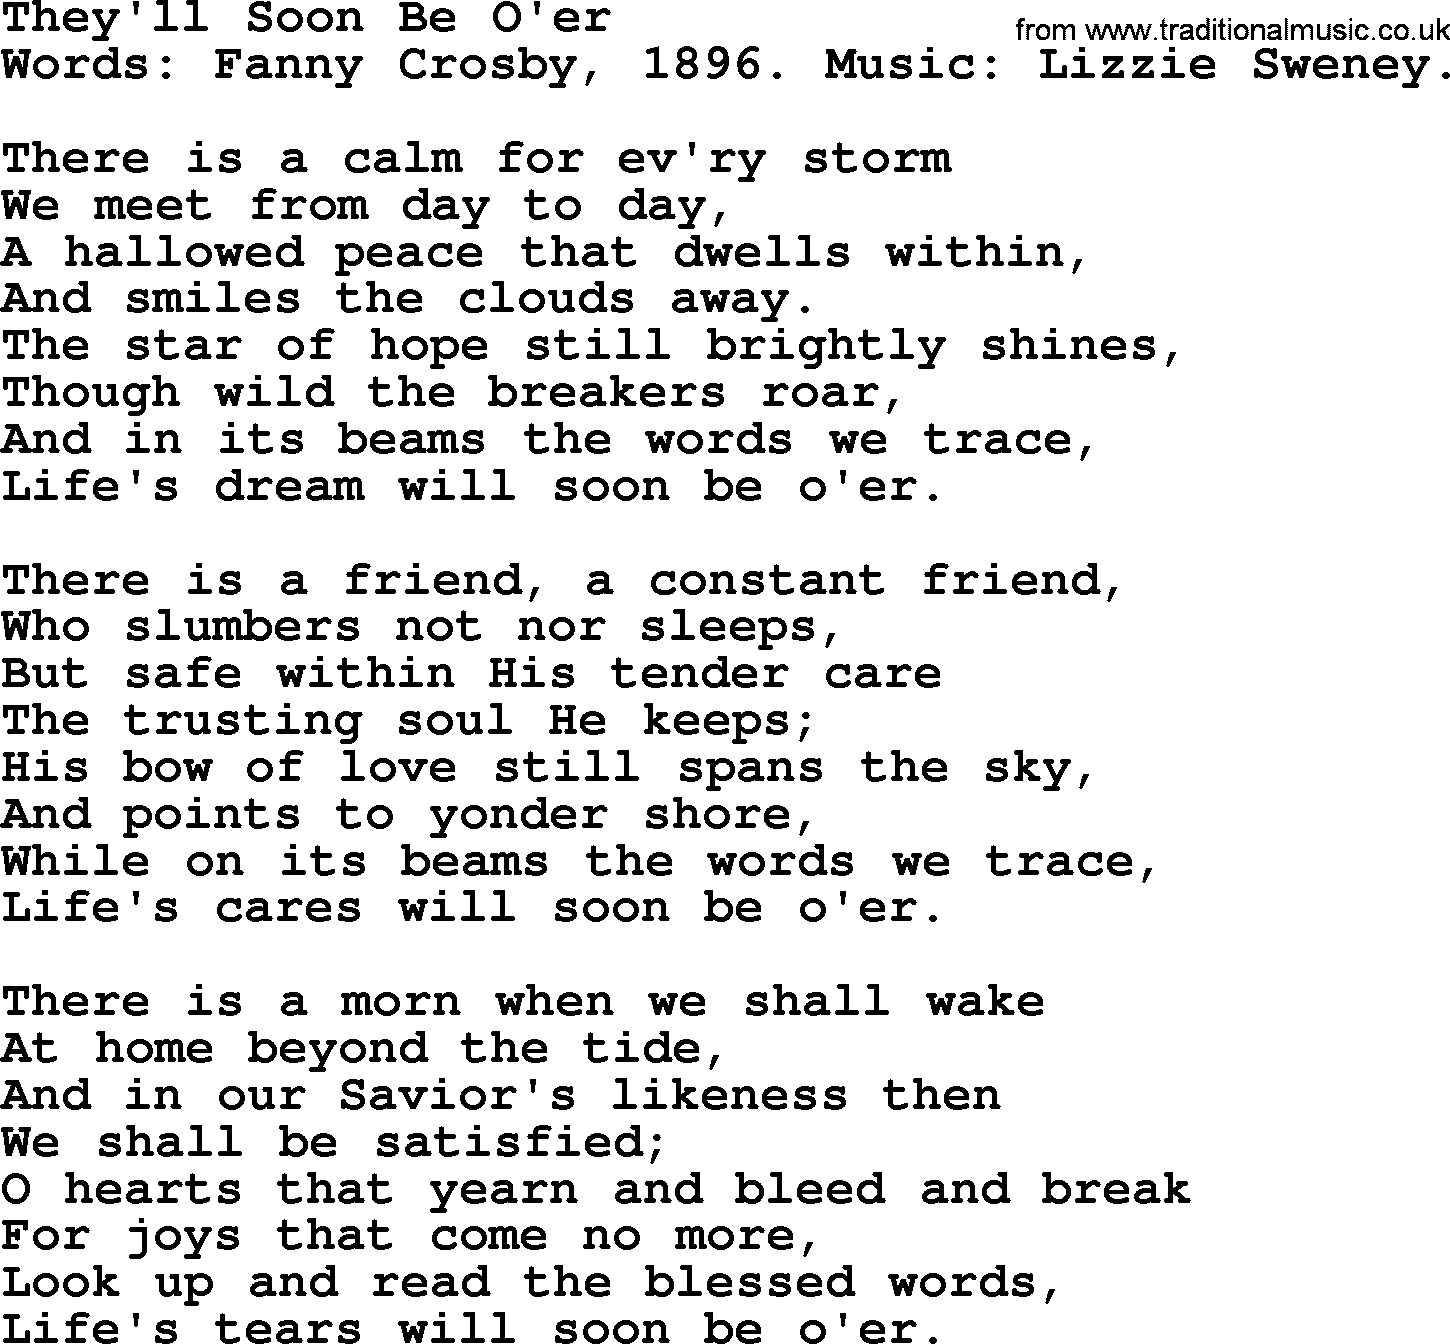 Fanny Crosby song: They'll Soon Be O'er, lyrics